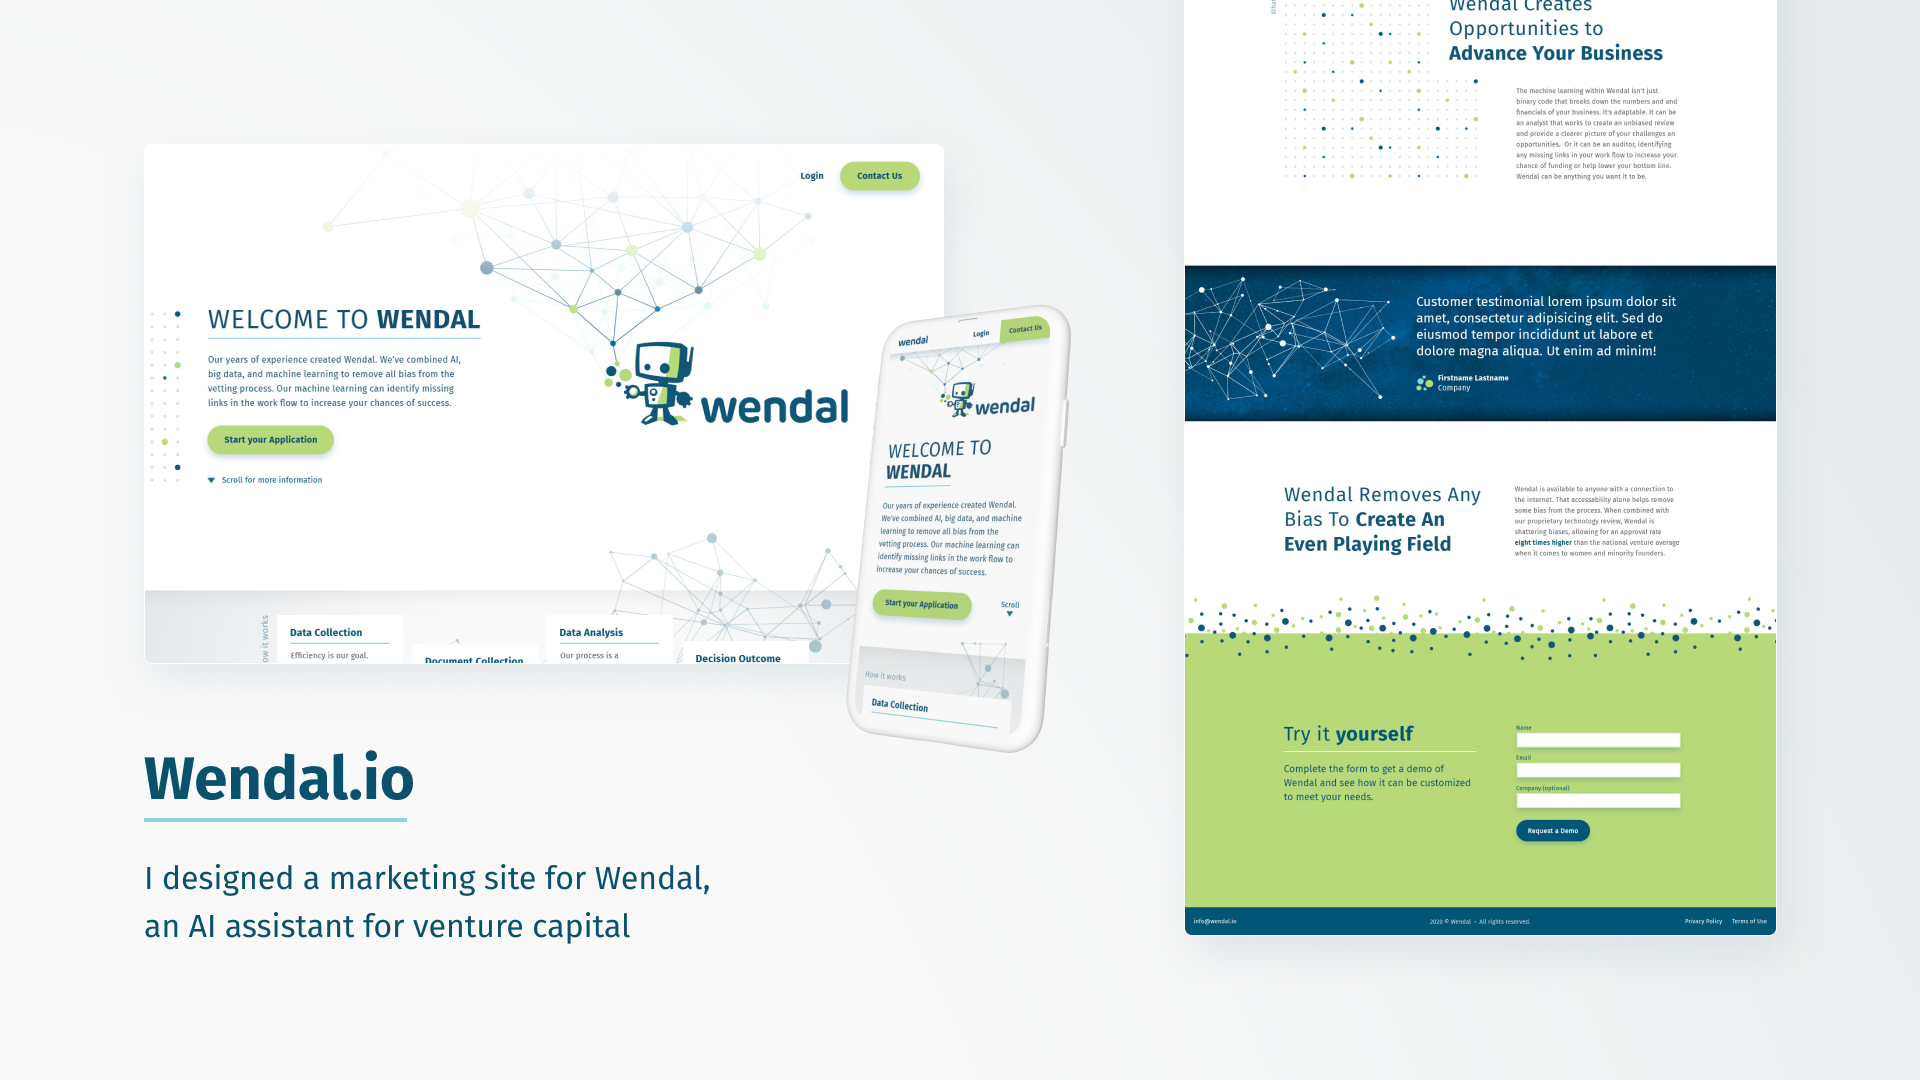 Wendal.io site design